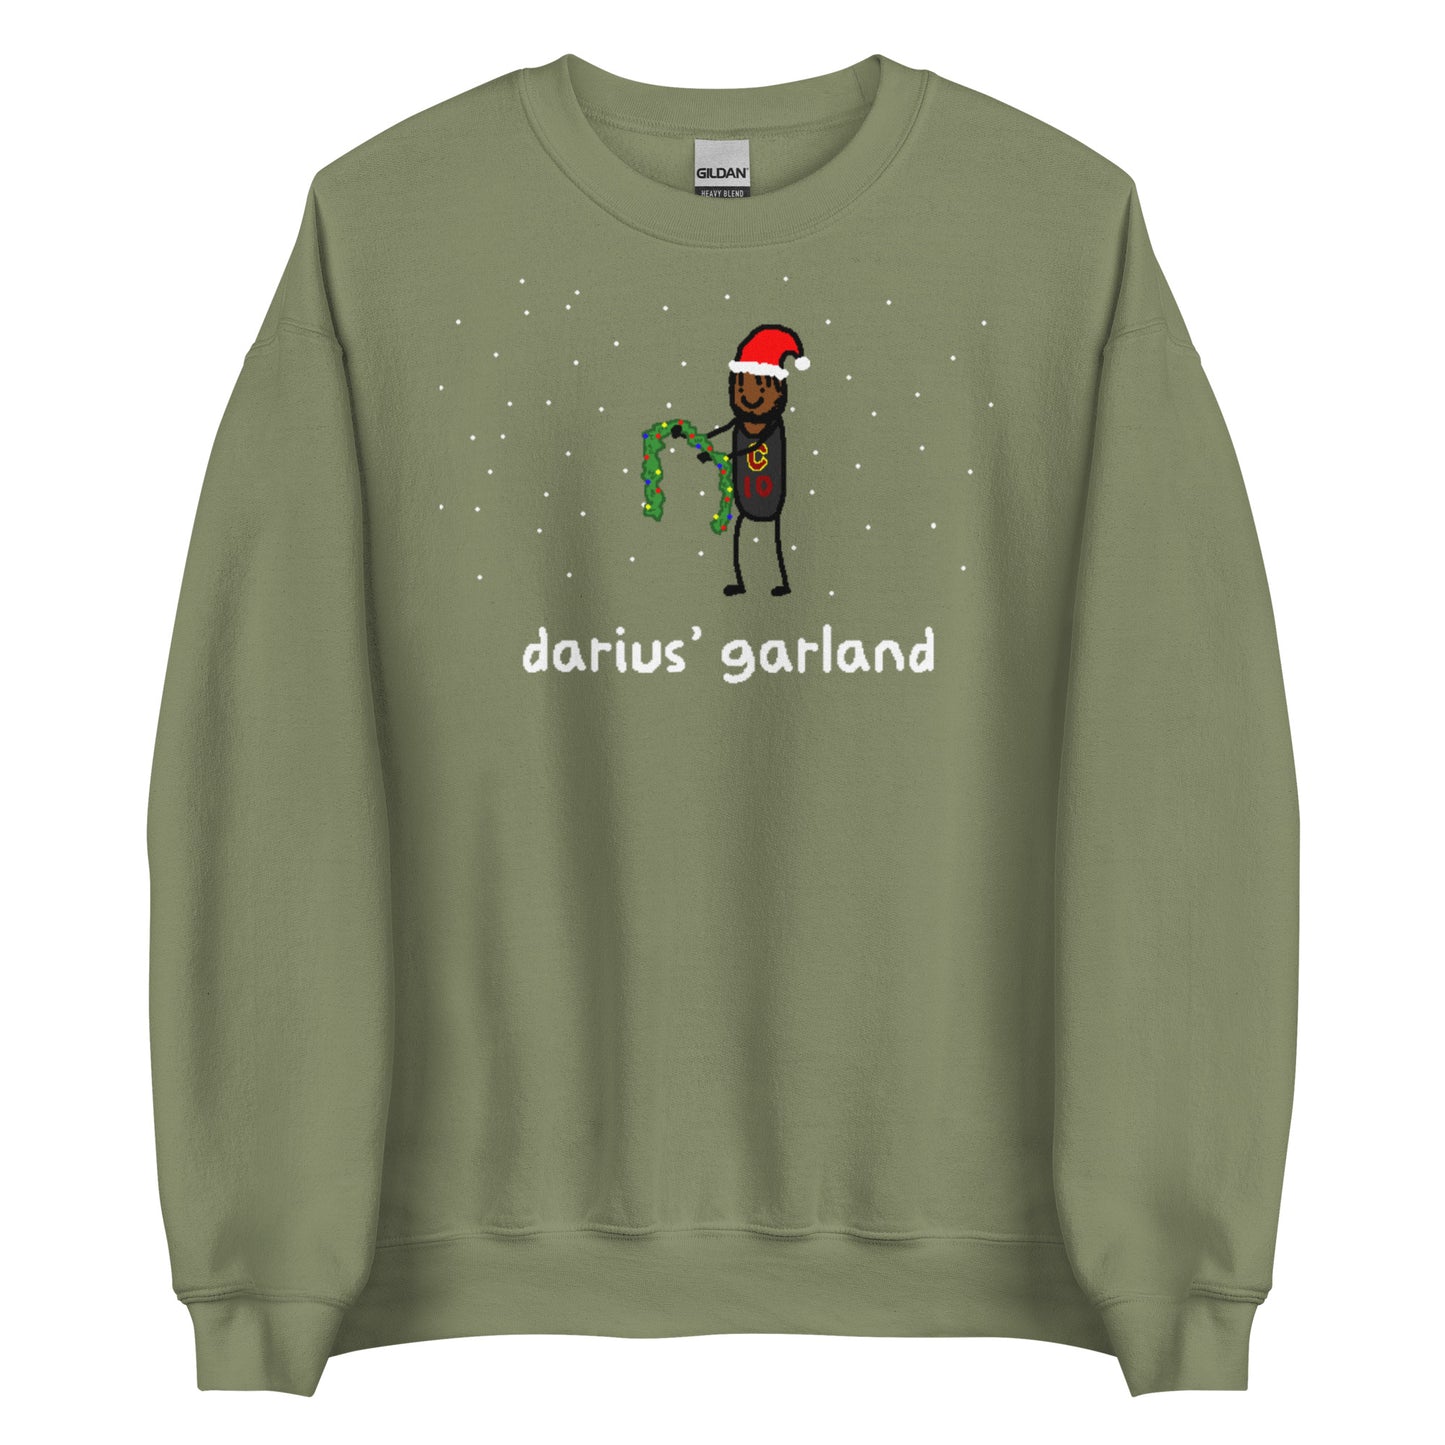 Darius' Garland Sweatshirt